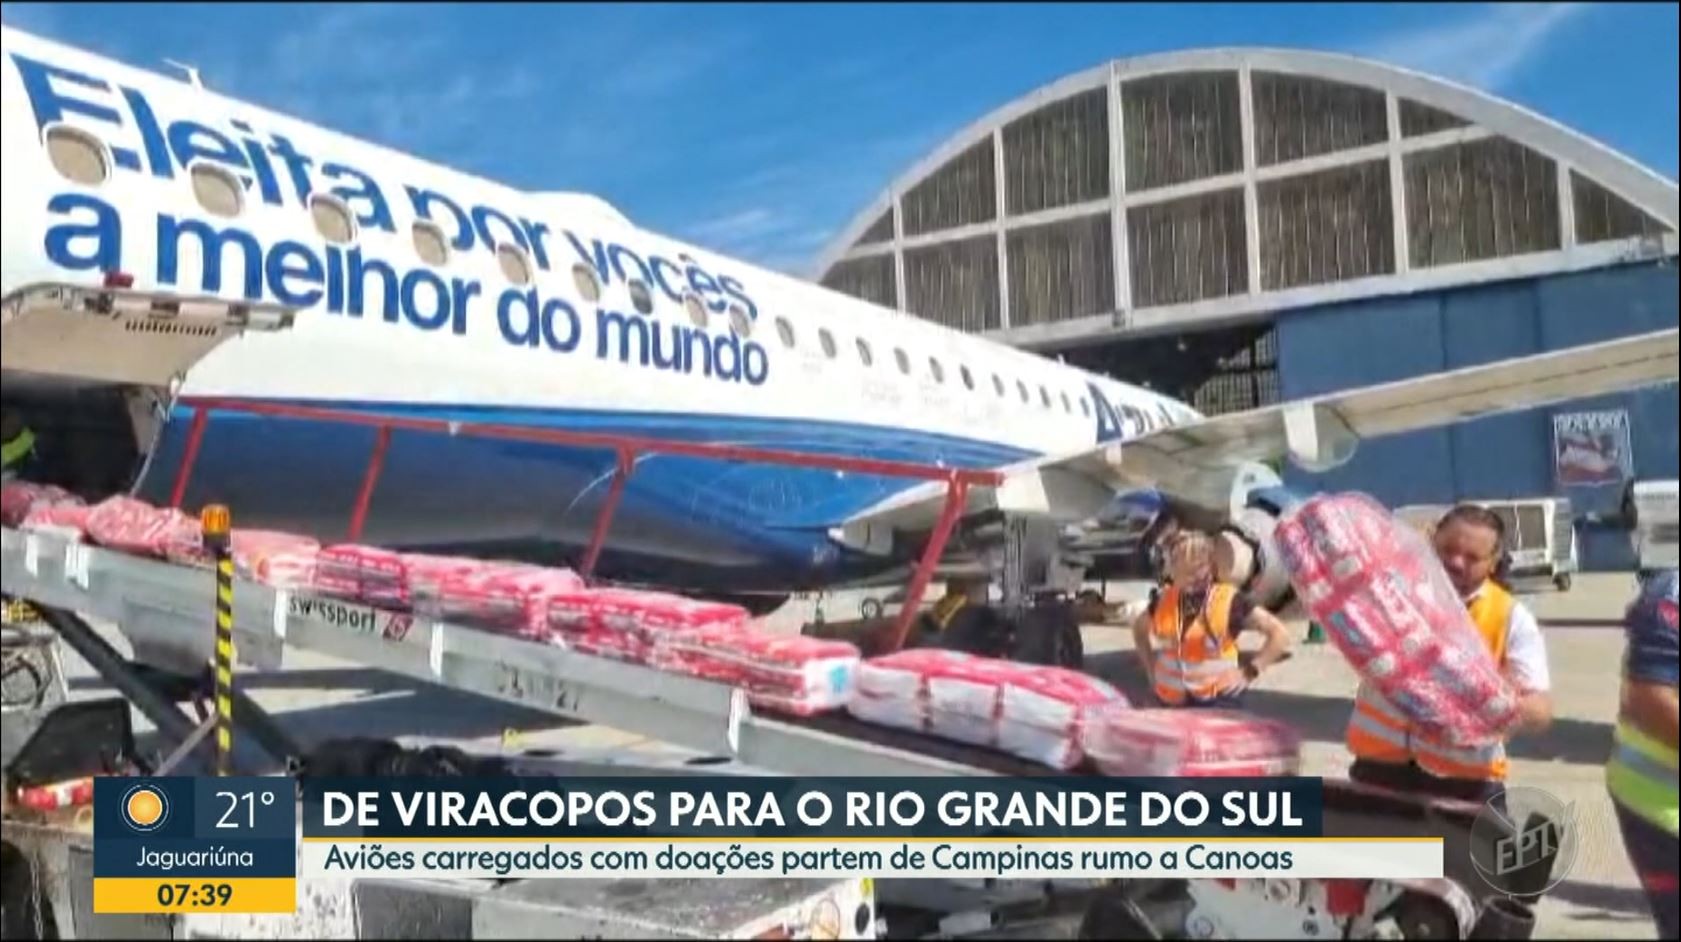 Aviões carregados com doações para vítimas das enchentes partem de Viracopos rumo ao RS